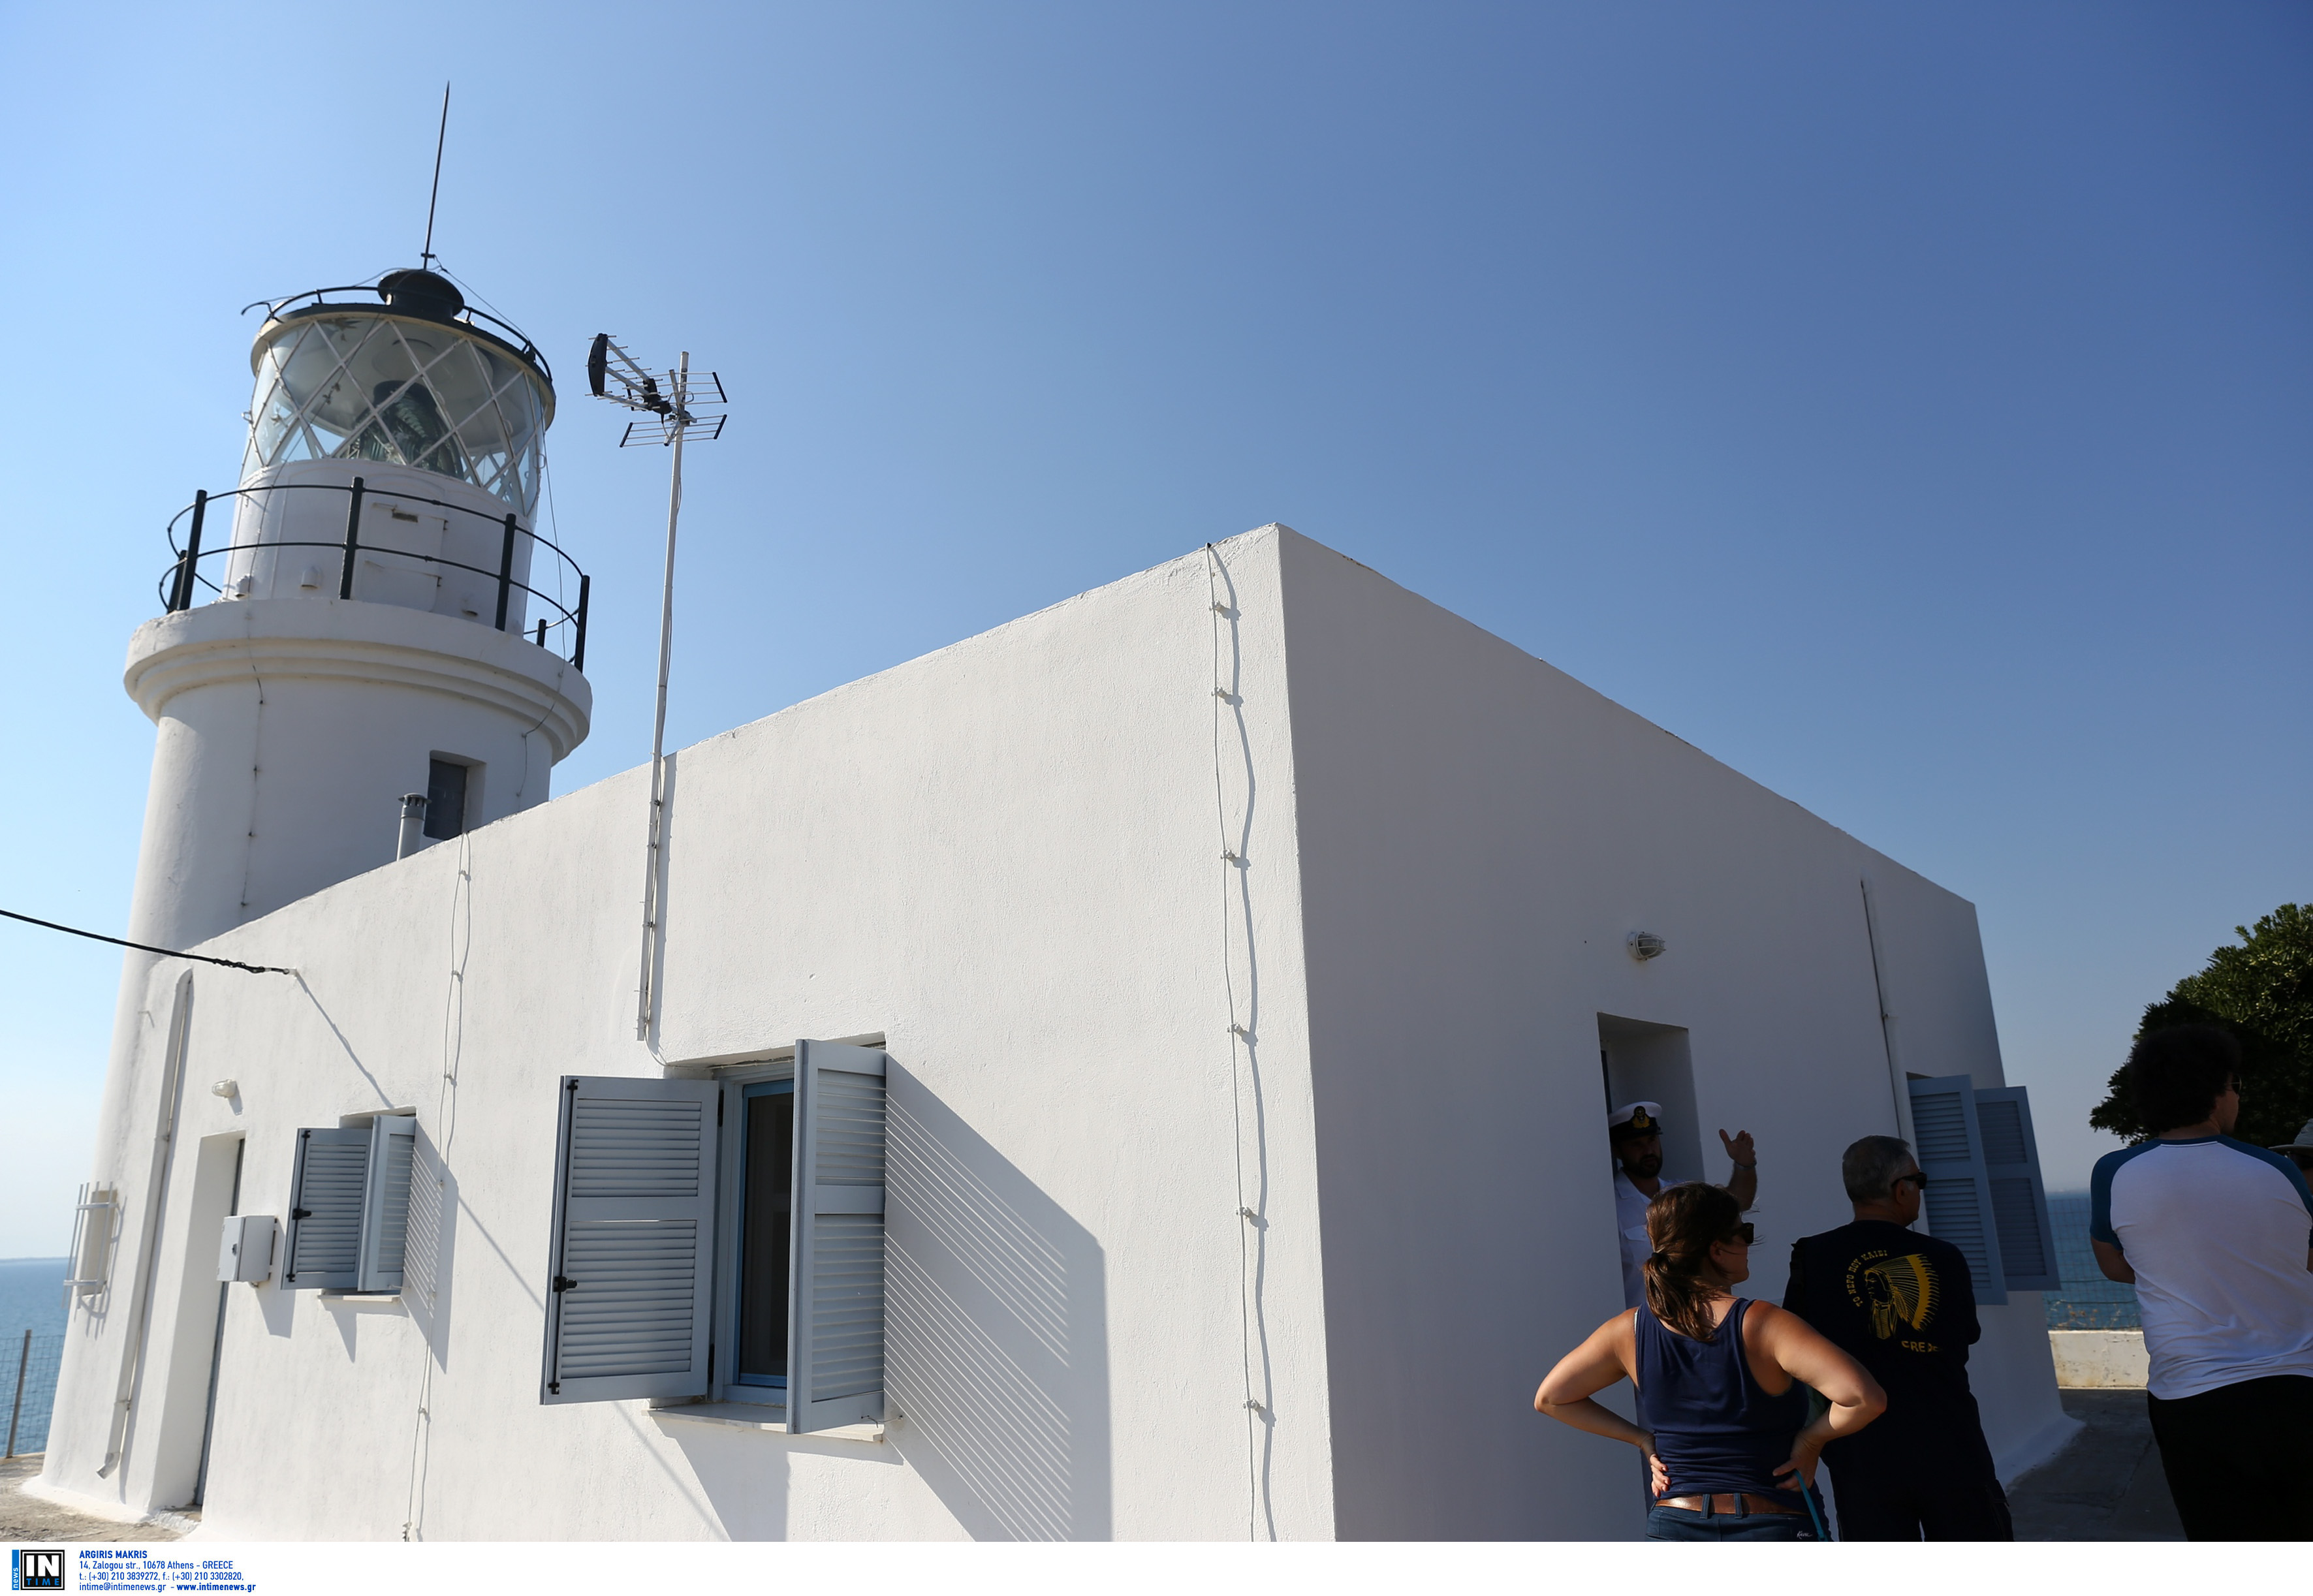 Ο φάρος στο Μεγάλο Έμβολο του Θερμαικού κόλπου κατασκευάστηκε το 1864 από την Γαλλική Εταιρεία Φάρων. Το ύψος του πύργου του ειναι 10,5 μέτρα και τό εστιακό του ύψος είναι 32 μέτρα. Βρίσκεται στην άκρη της Ναυτικής Βάσης του Πολεμικού Ναυτικού στο Αγγελοχώρι Θεσσαλονίκης και συνεργάζεται με τον Ραδιοφάρο που βρίσκεται στην απέναντι πλευρά του Θερμαικού στις εκβολές του Αξιού. Εντάχθηκε στο Ελληνικό φαρικό δίκτυο μετά τους Βαλκανικούς Πολέμους του 1912-13. Ο φάρος κατασκευάστηκε από τη γαλλική Εταιρεία Οθωμανικών Φάρων. Ηταν φτιαγμένος από συμπαγείς οπτόπλινθους, όπως οι καμινάδες των πρώτων βιομηχανικών κτιρίων της Θεσσαλονίκης. Μπροστά του, στη βραχώδη ακτή, την περίοδο 1883-1885, Γερμανοί τεχνικοί έχτισαν οχυρά, έπειτα από παραγγελία των Οθωμανών. Τότε λειτουργούσε με καύσιμο το πετρέλαιο. Μετά τον Α' Παγκόσμιο Πόλεμο εντάχθηκε στο ελληνικό φαρικό δίκτυο. φωτογραφία: intimenews ΤΟΣΙΔΗΣ ΔΗΜΗΤΡΗΣ 